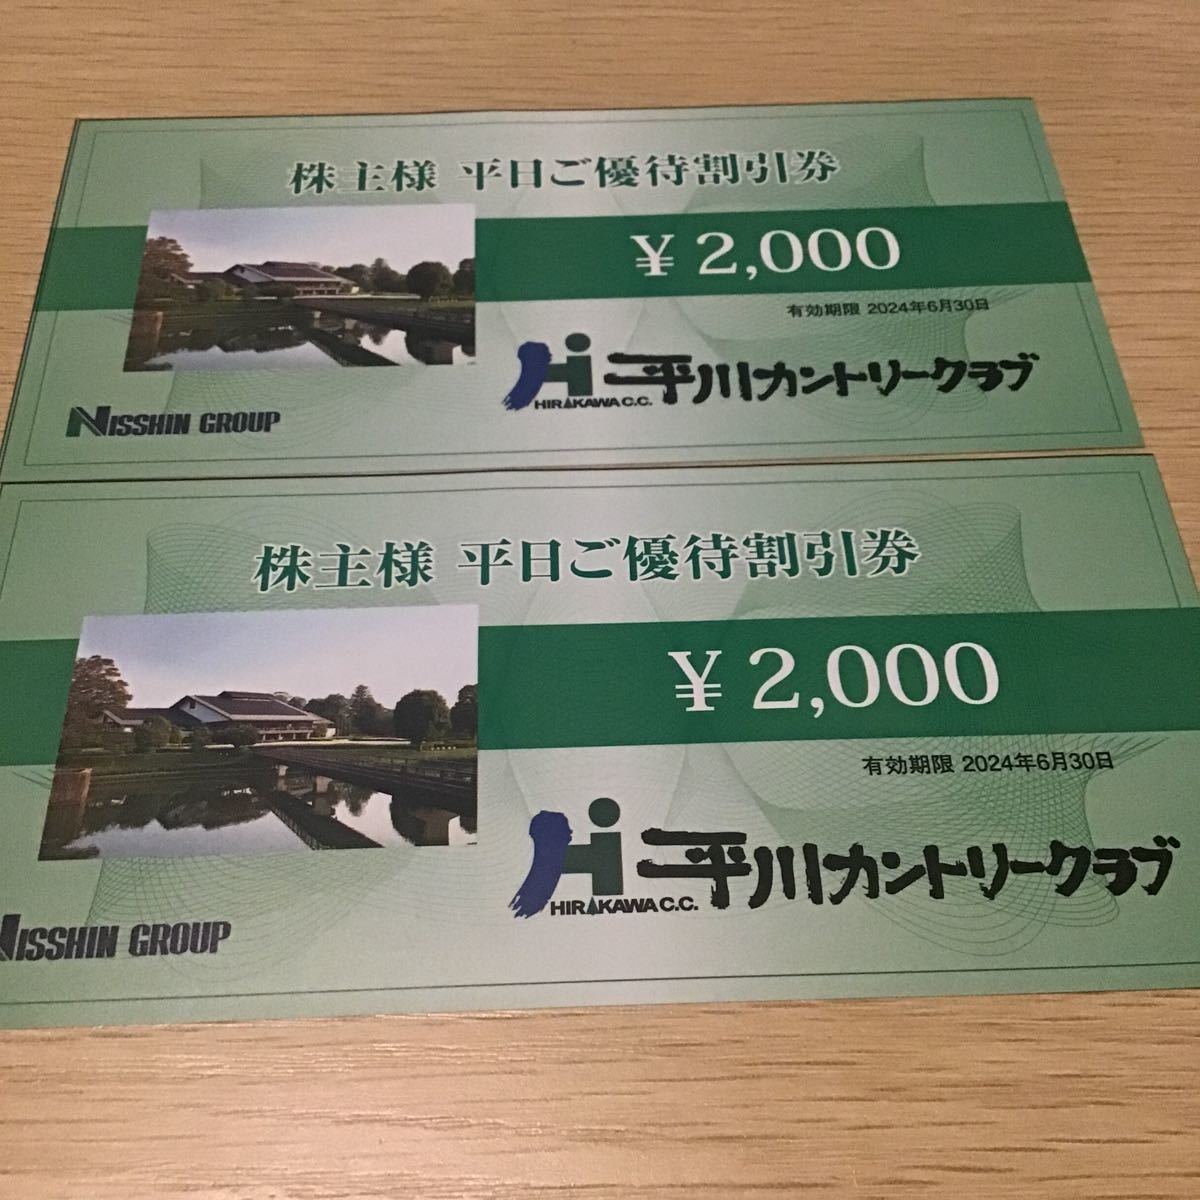  flat река Country Club рабочий день . гостеприимство льготный билет 4000 иен минут nisshin group день бог 